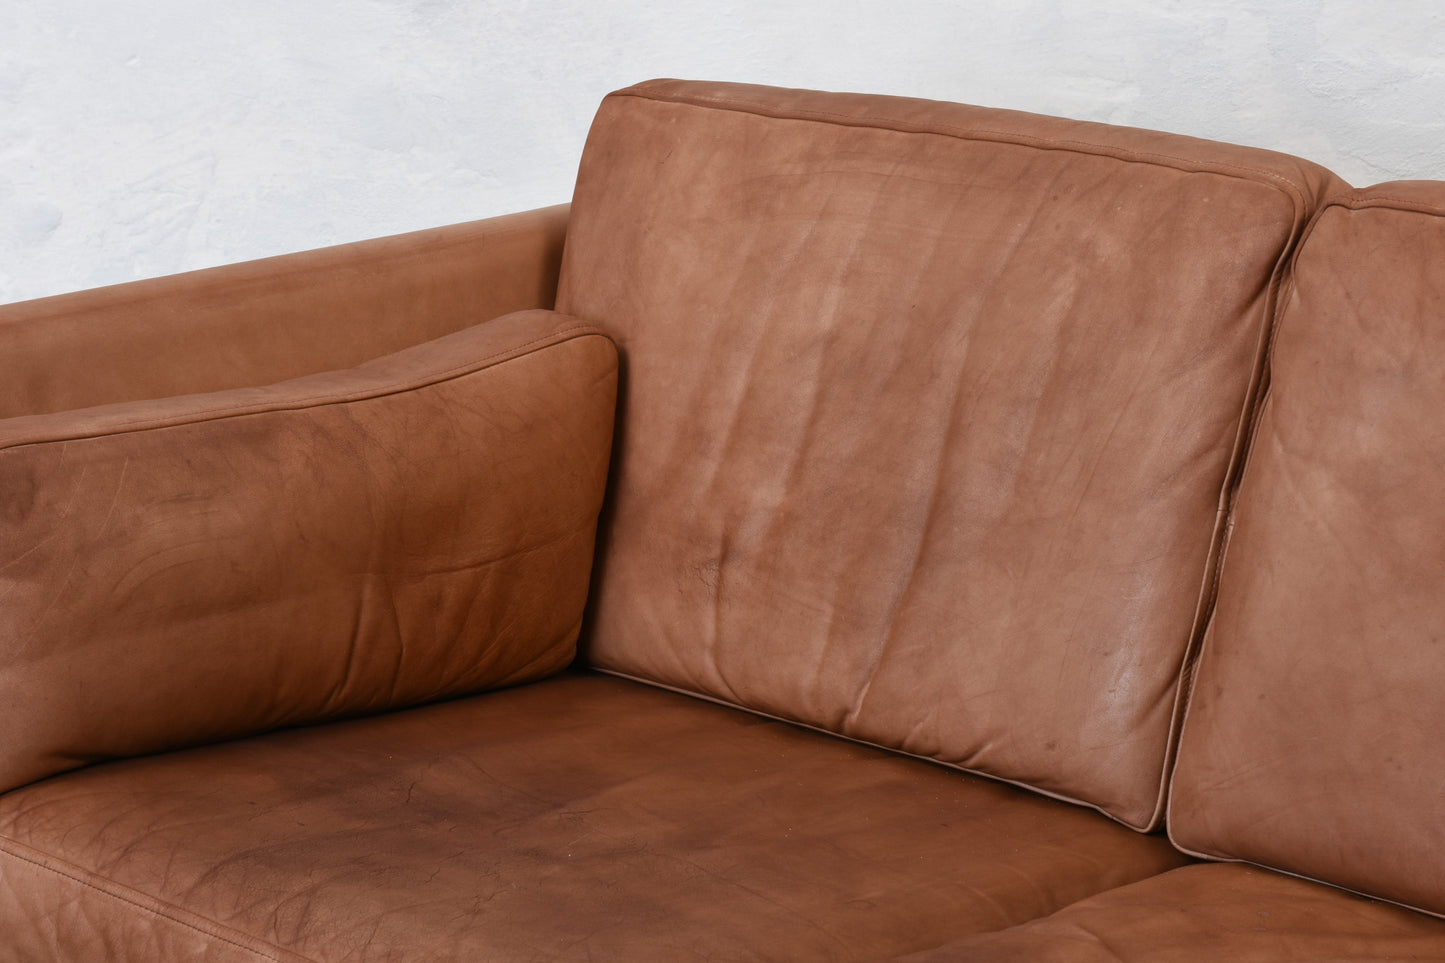 1960s tan leather three seat sofa